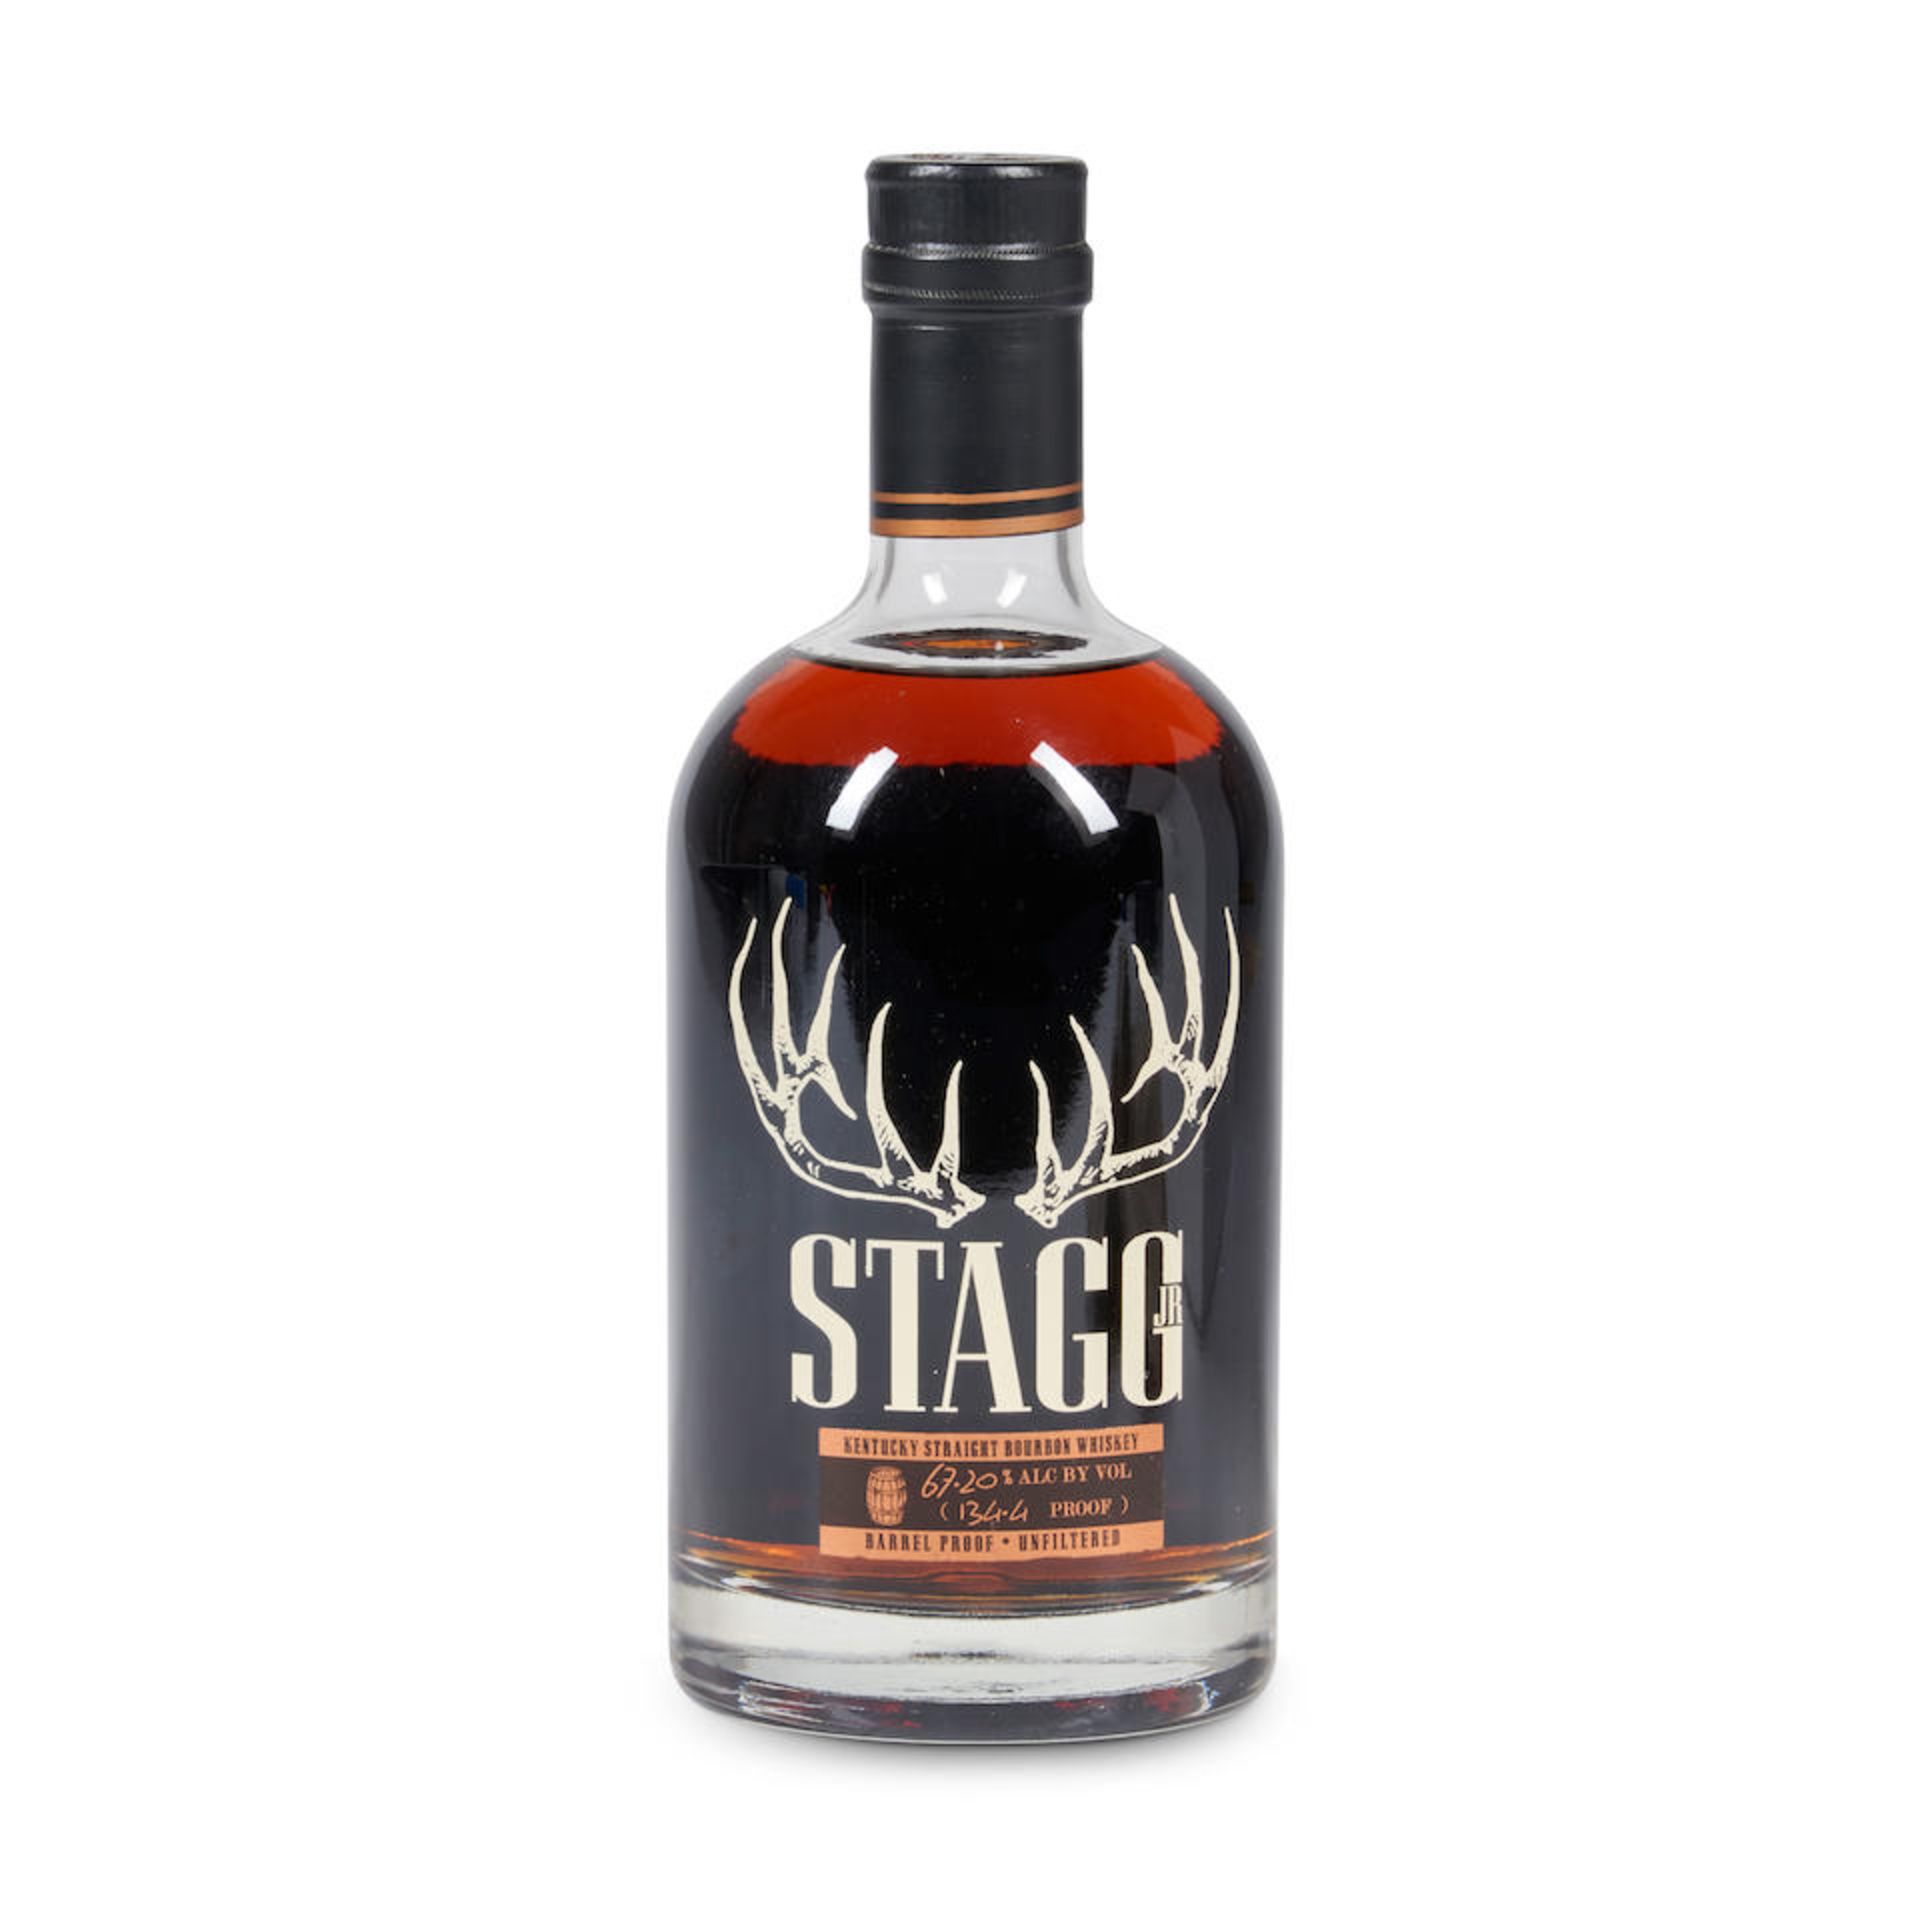 Stagg Jr. Batch 1 2013 (1 750ml bottle)